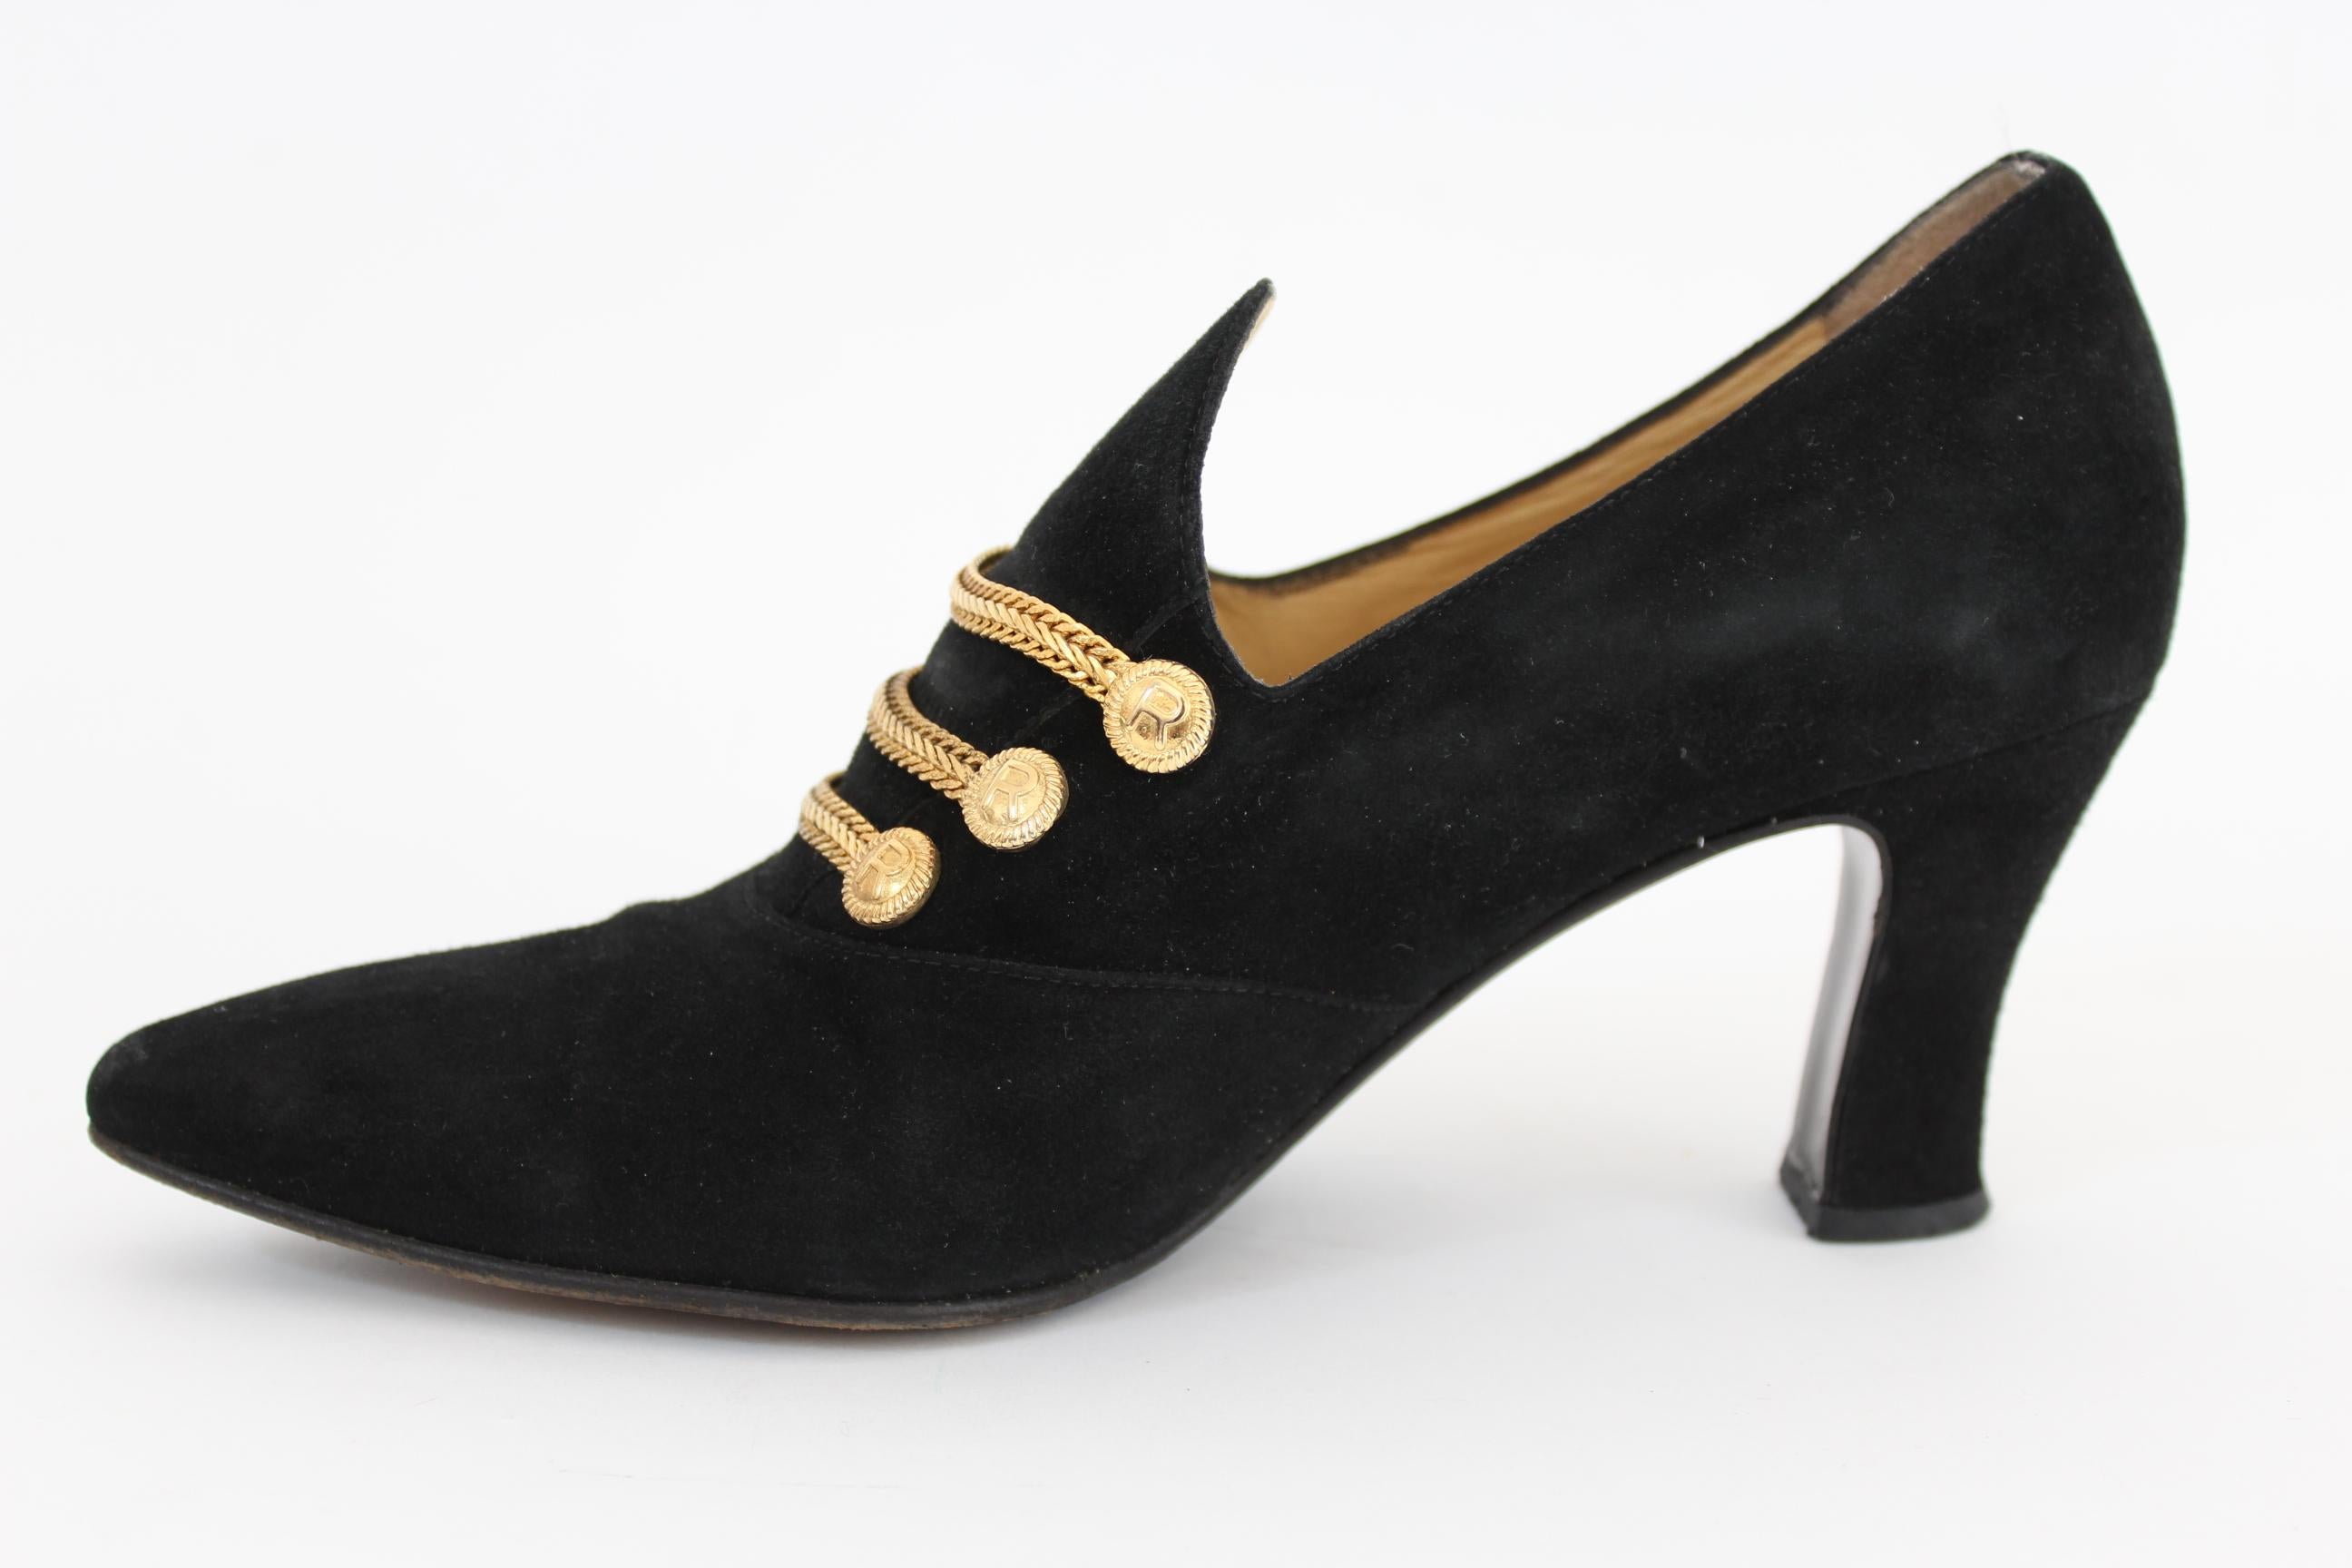 1980s women's shoes